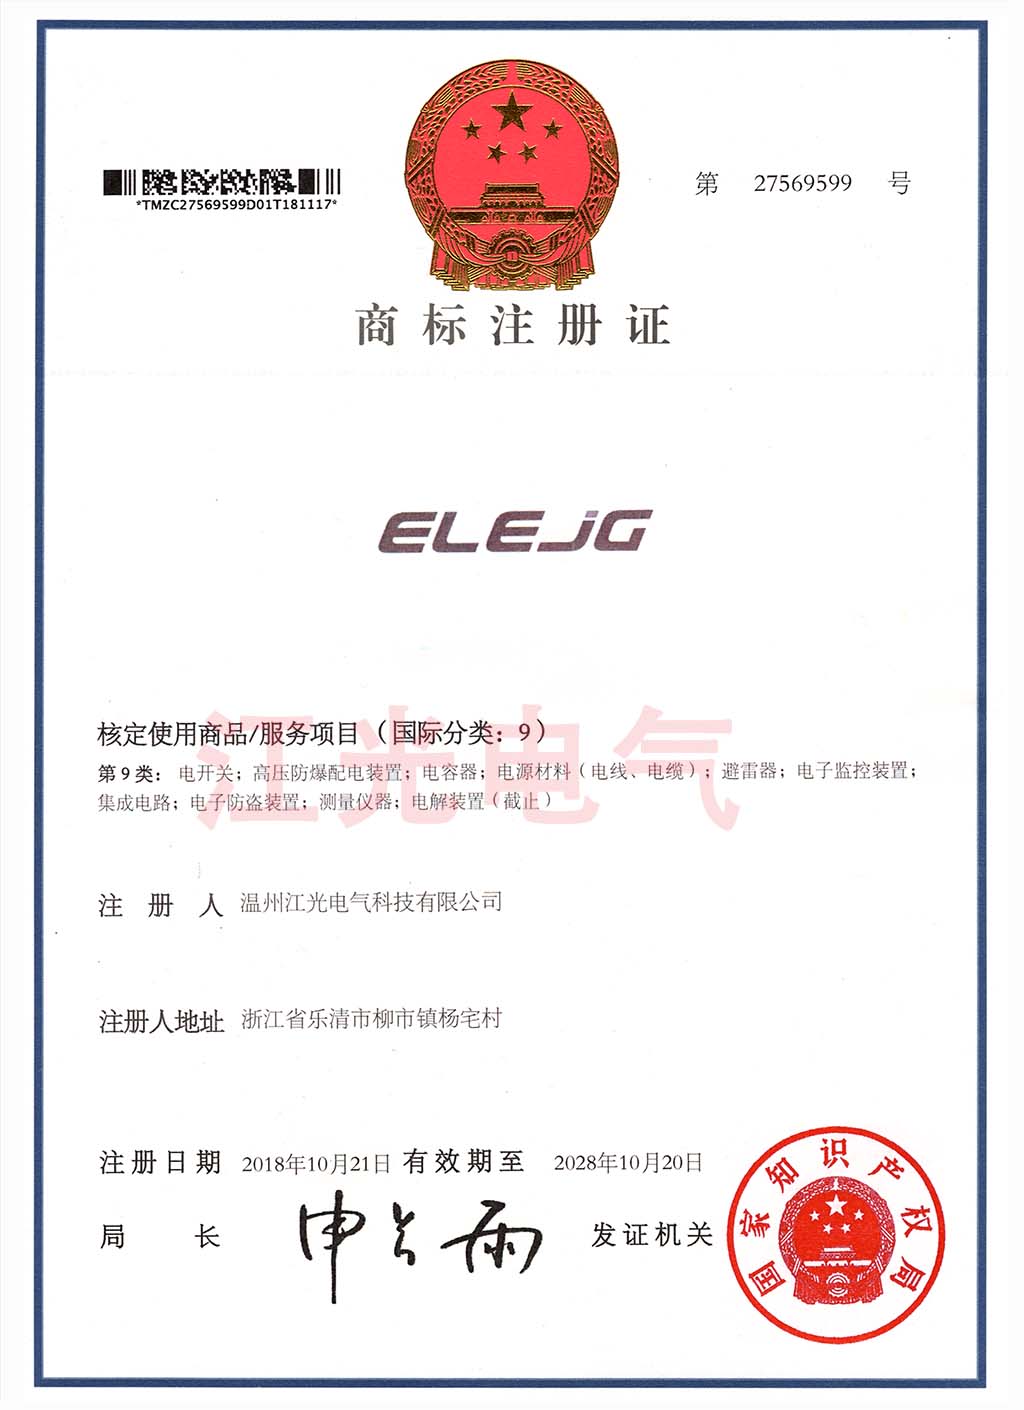 江光电气 公司商标证书ELEJG